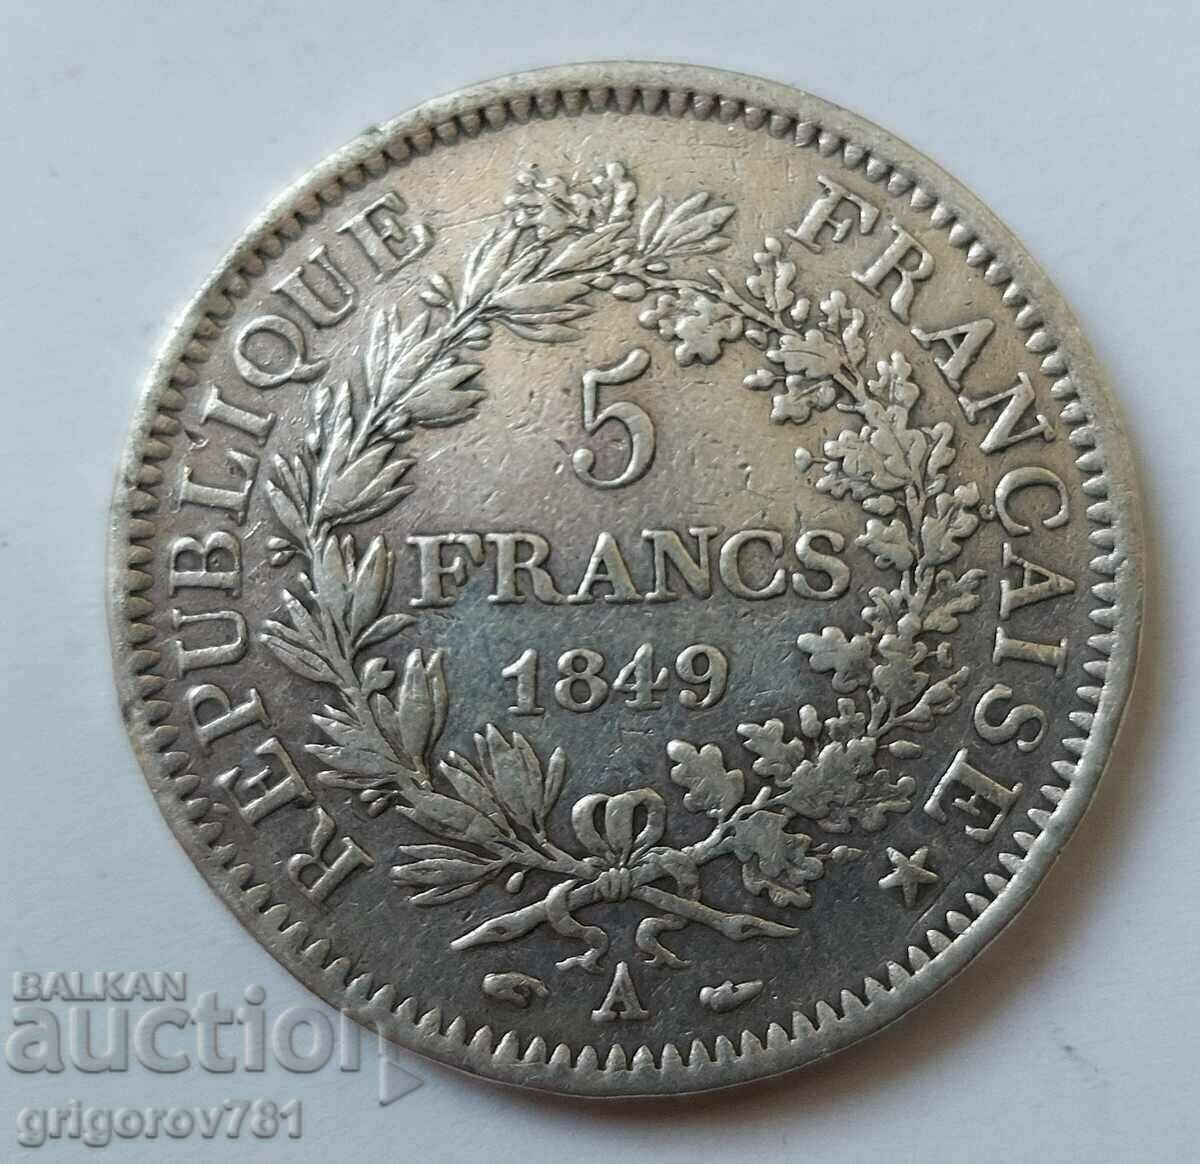 5 Franci Argint Franta 1949 A - Moneda de argint #84